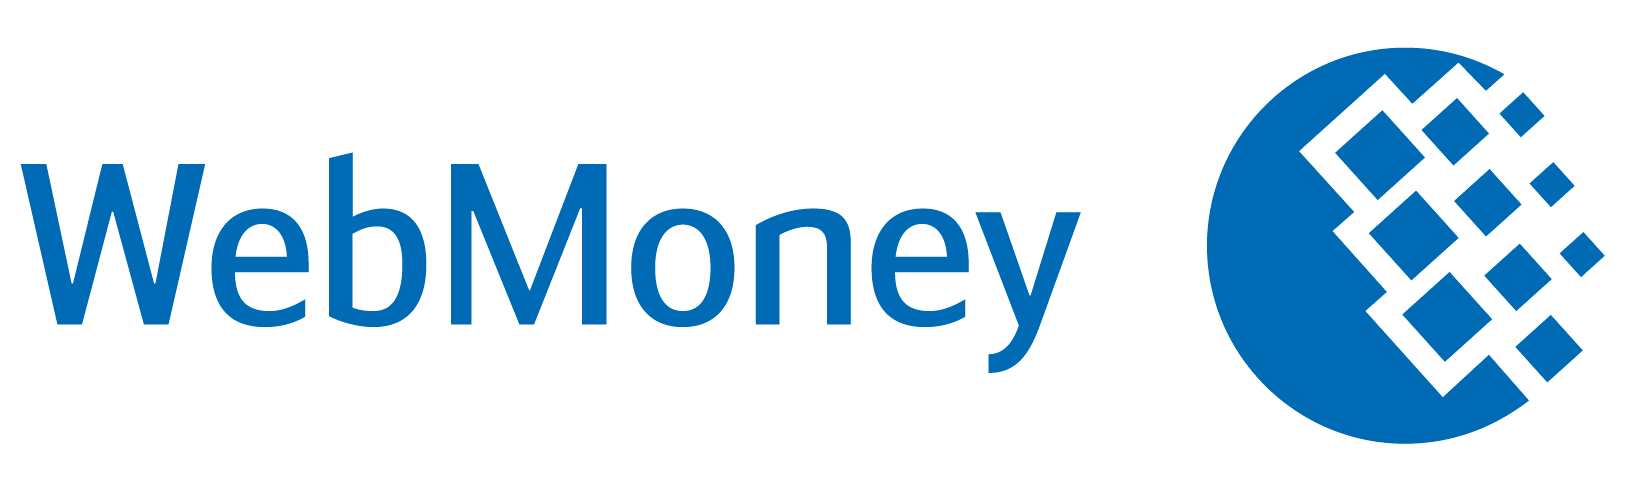 Webmoneyのロゴ